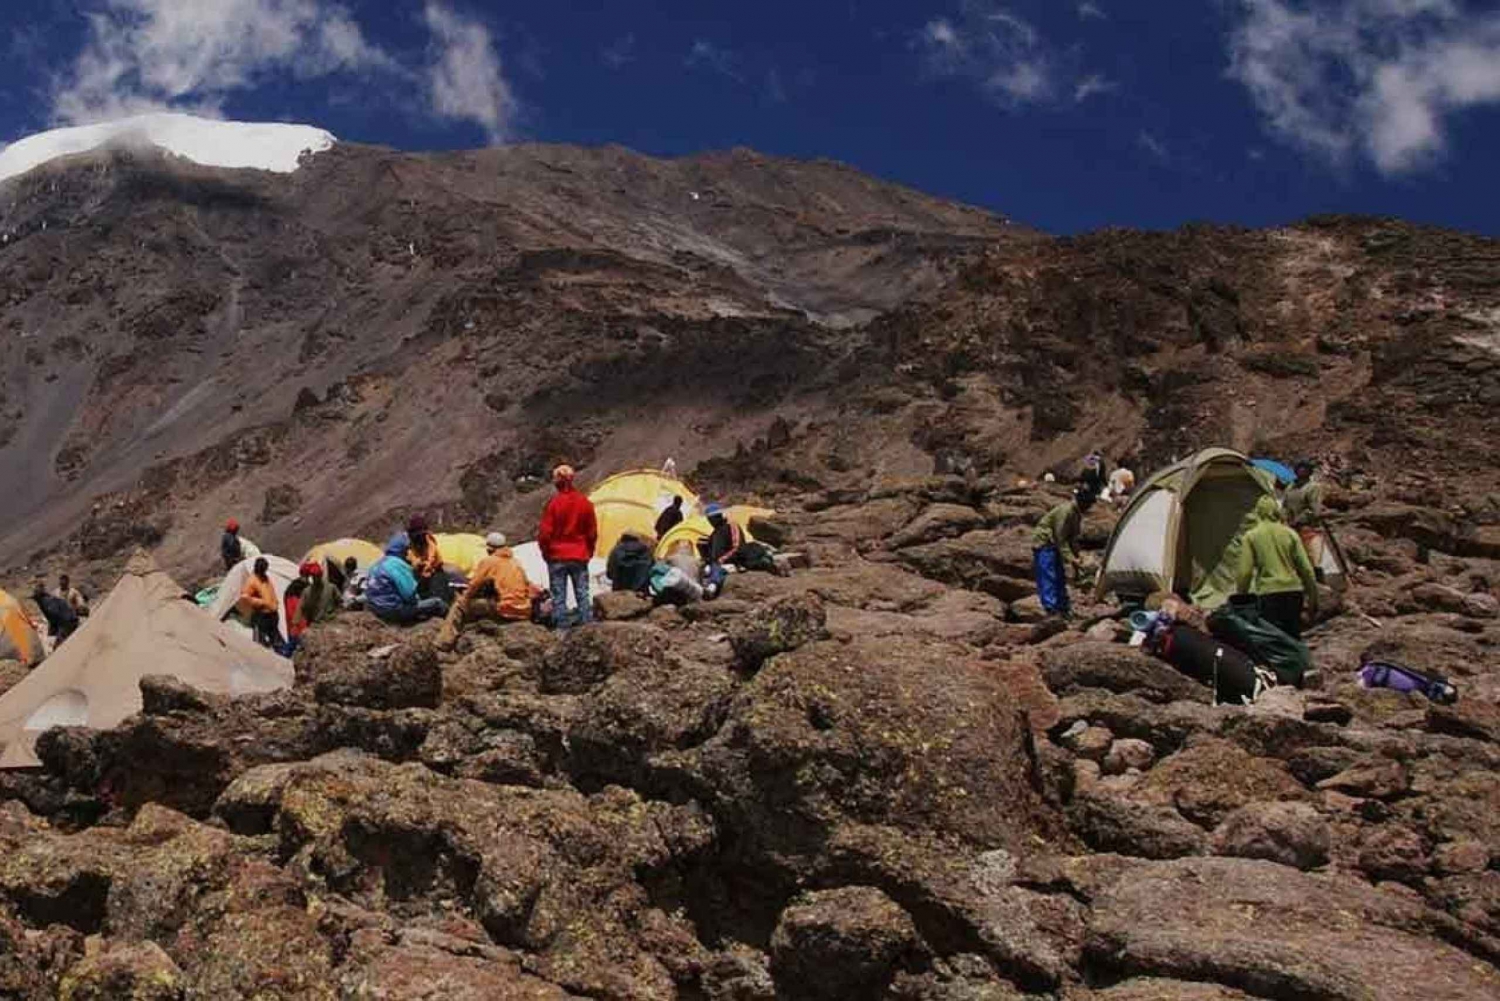 Kilimanjaro National Park – Shira Plateau, one day hike